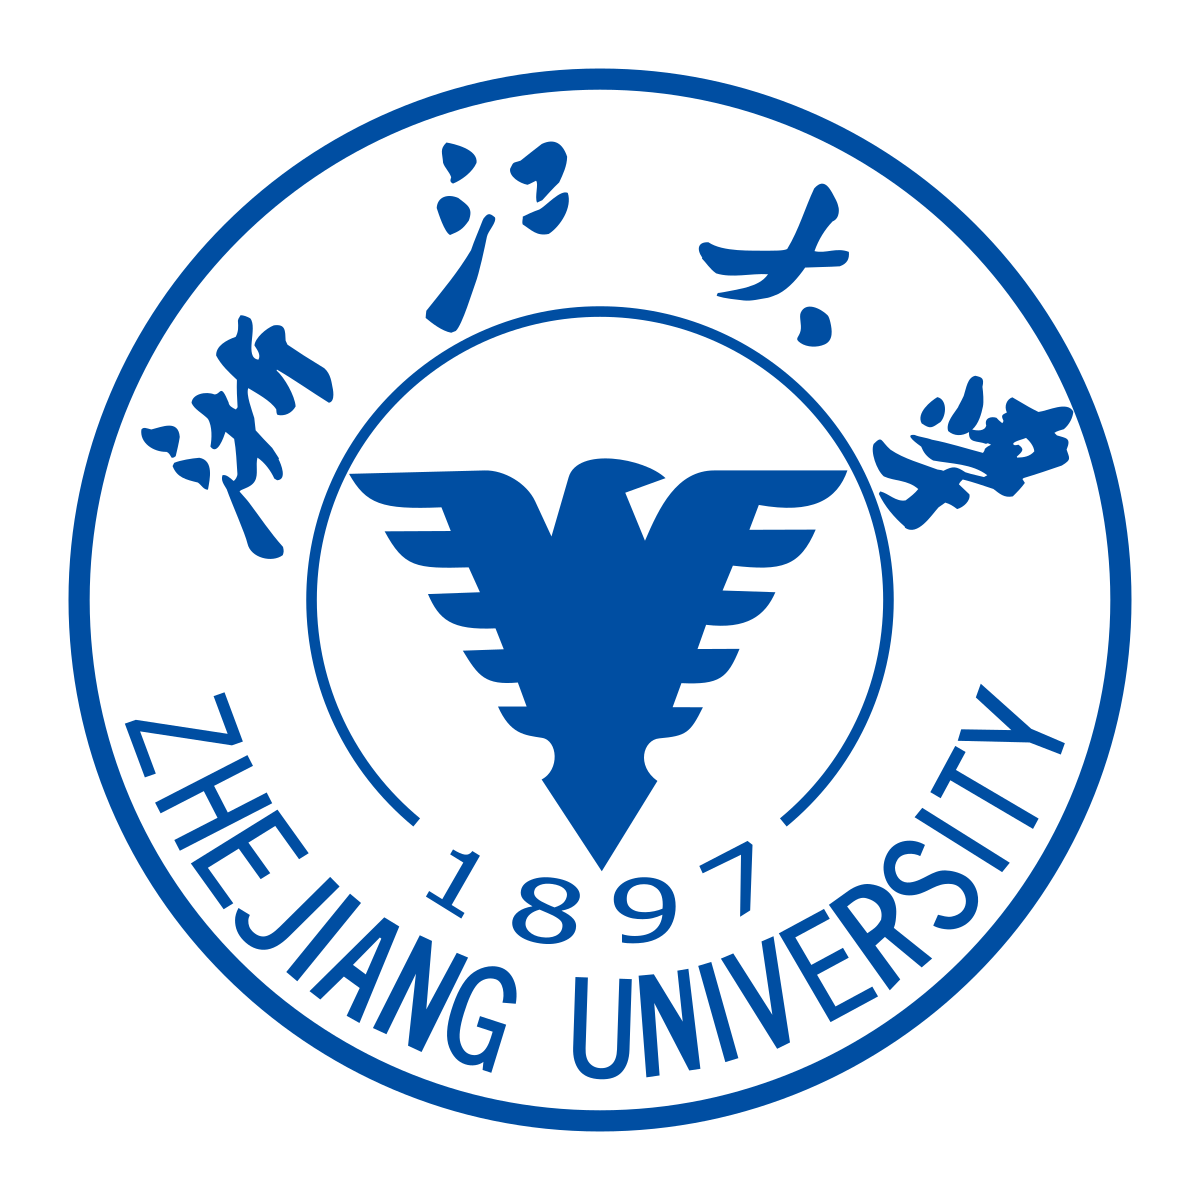 Zhejiang University - Wikipedia